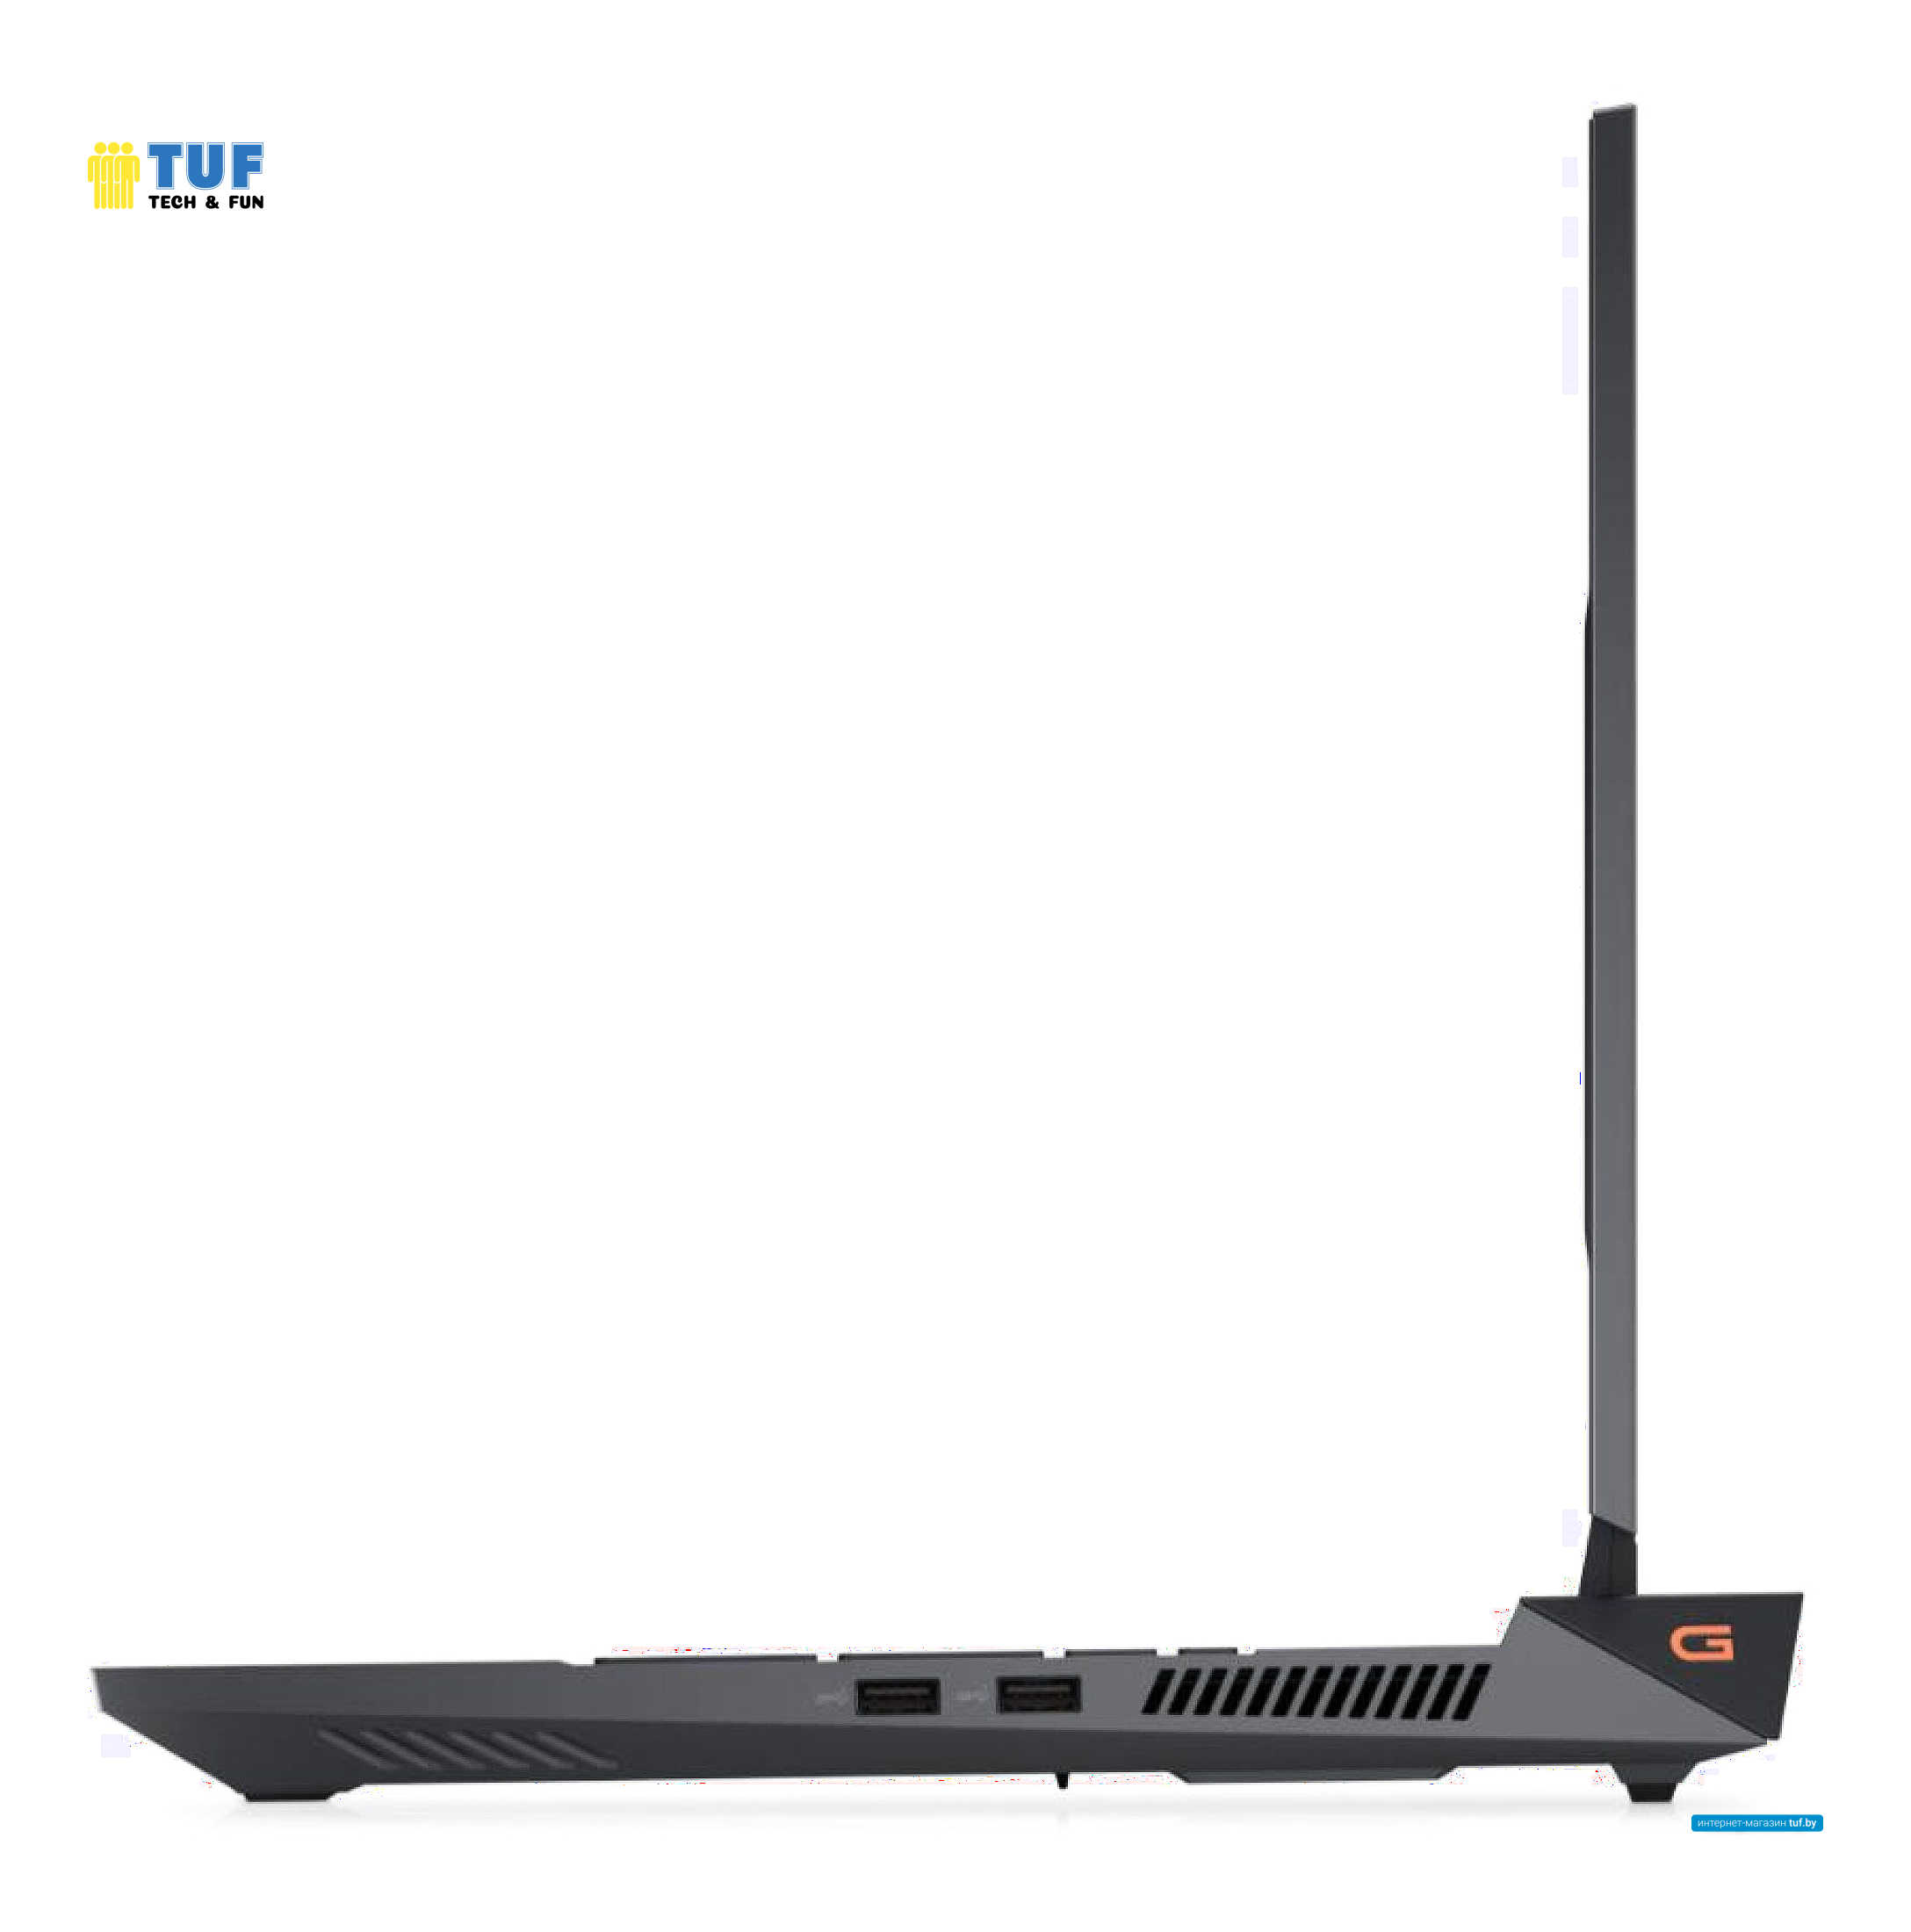 Игровой ноутбук Dell G15 5530-6923